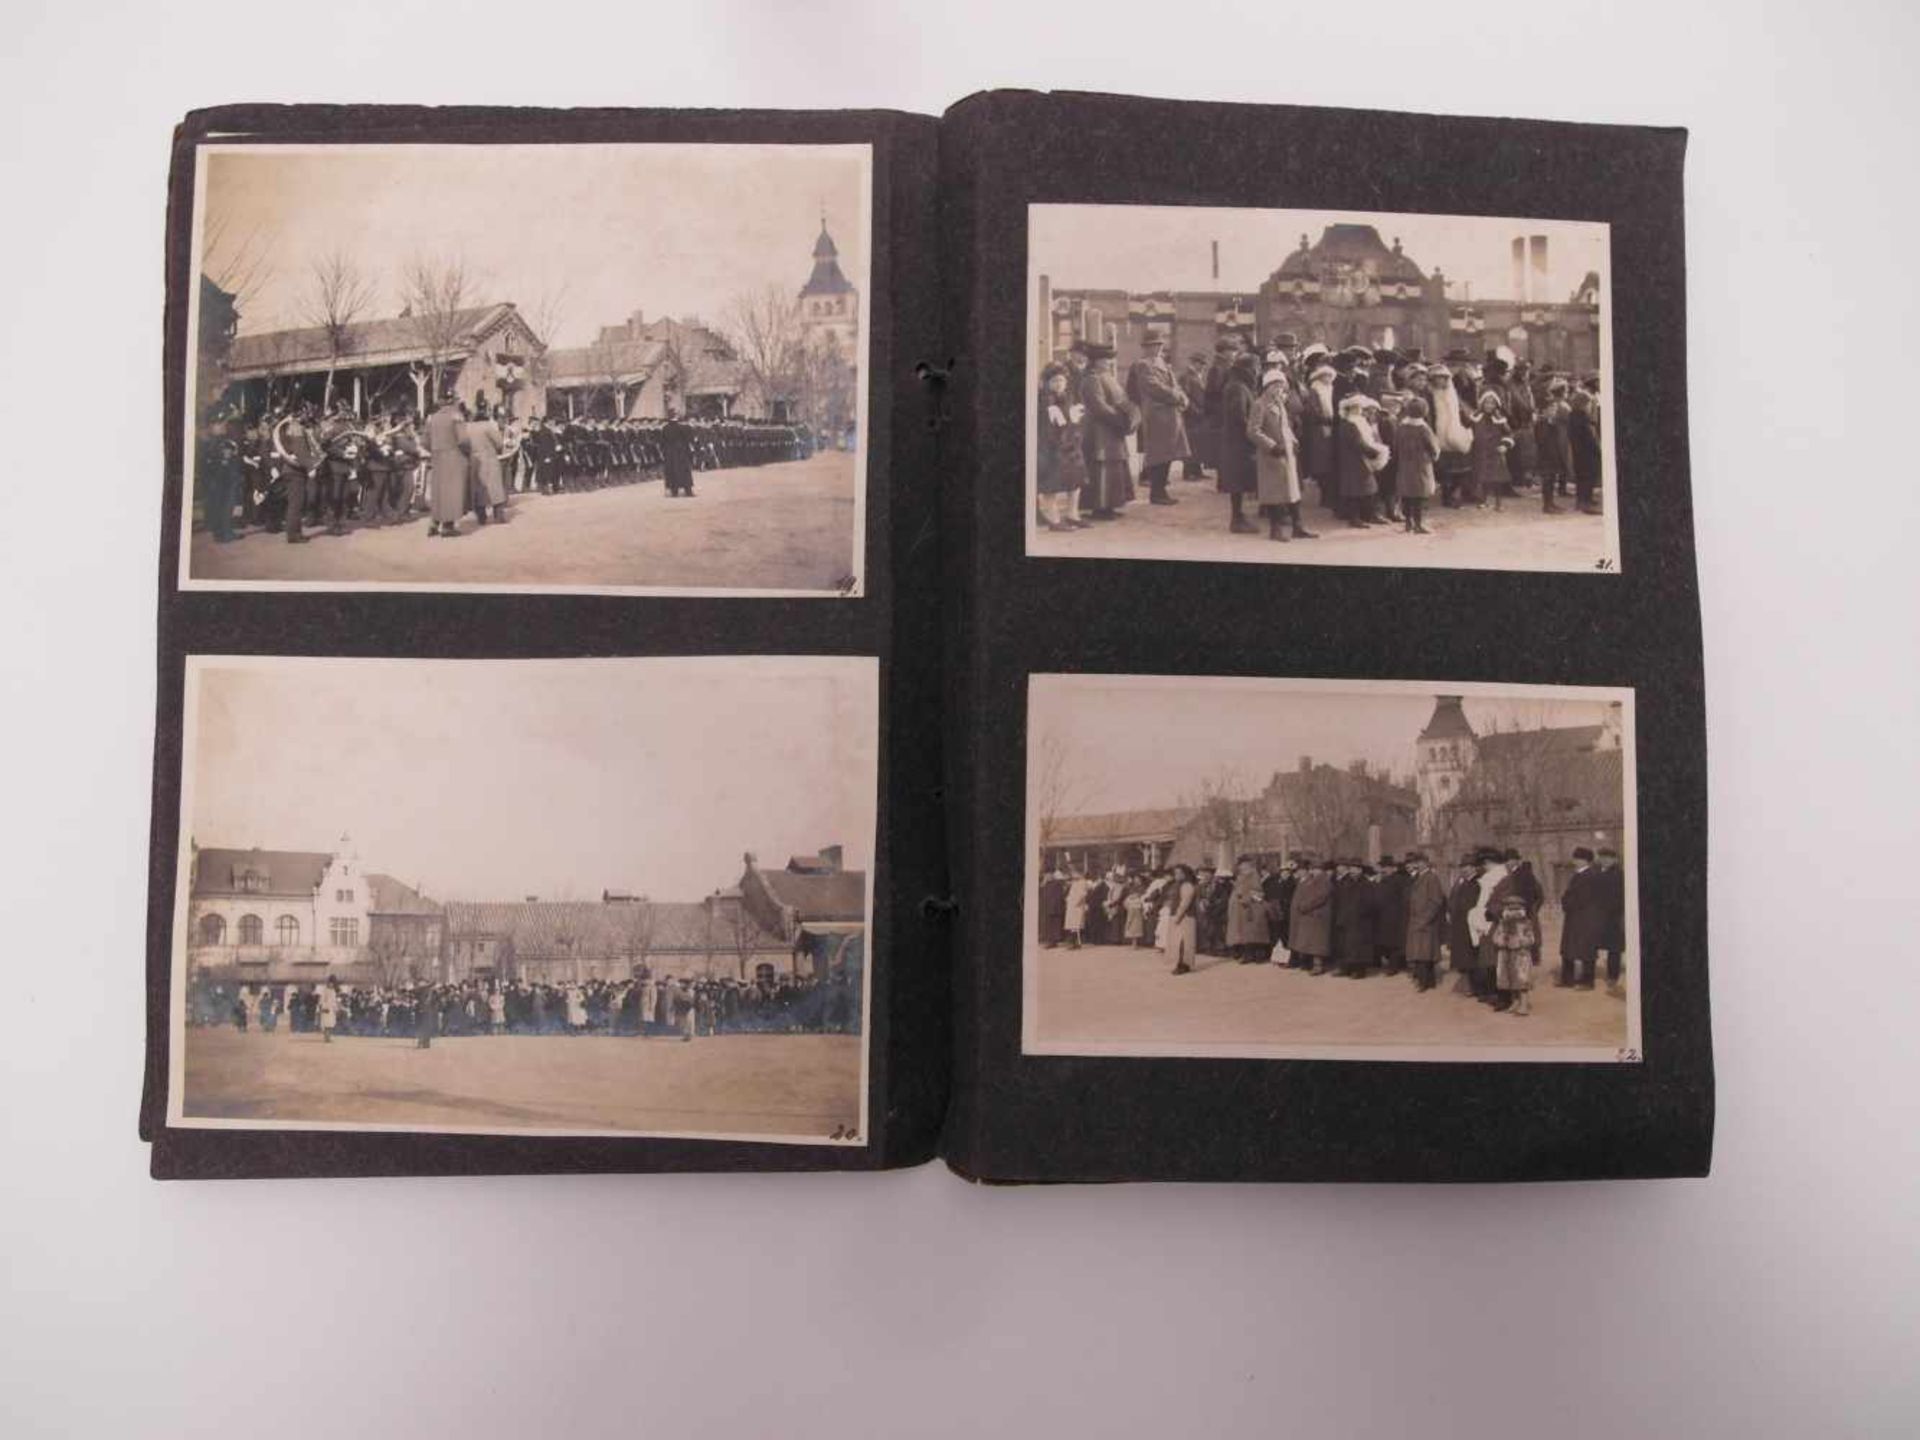 ALBUM MIT FOTOS DER PARADE ZUM KAISERGEBURTSTAG. China. Datiert 29. Januar 1917. Heft (25,5 x 19, - Bild 4 aus 11